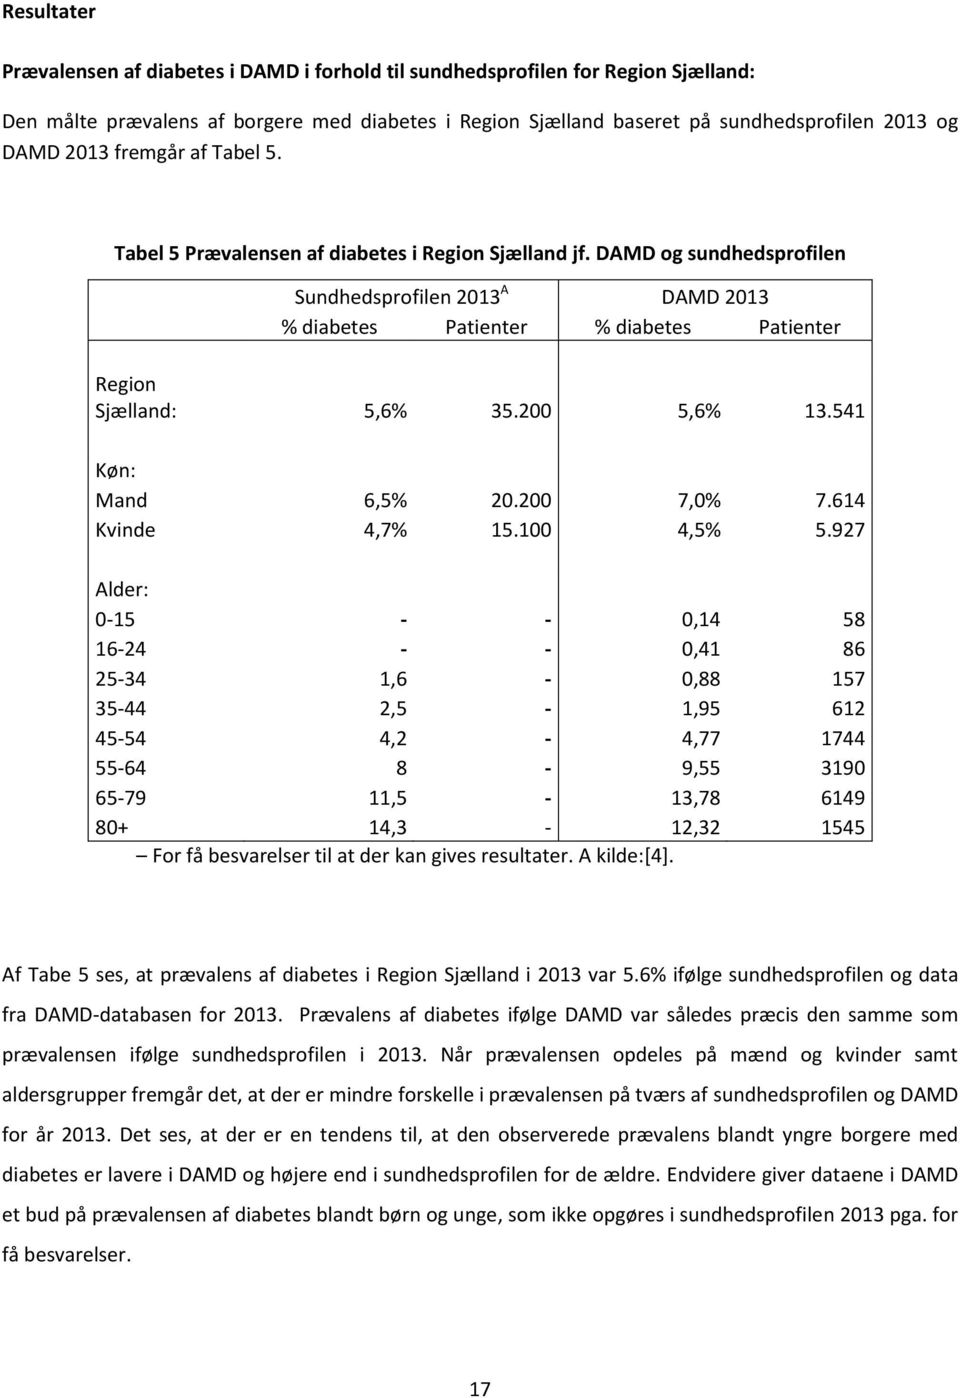 DAMD og sundhedsprofilen Sundhedsprofilen 2013 A DAMD 2013 % diabetes Patienter % diabetes Patienter Region Sjælland: 5,6% 35.200 5,6% 13.541 Køn: Mand 6,5% 20.200 7,0% 7.614 Kvinde 4,7% 15.